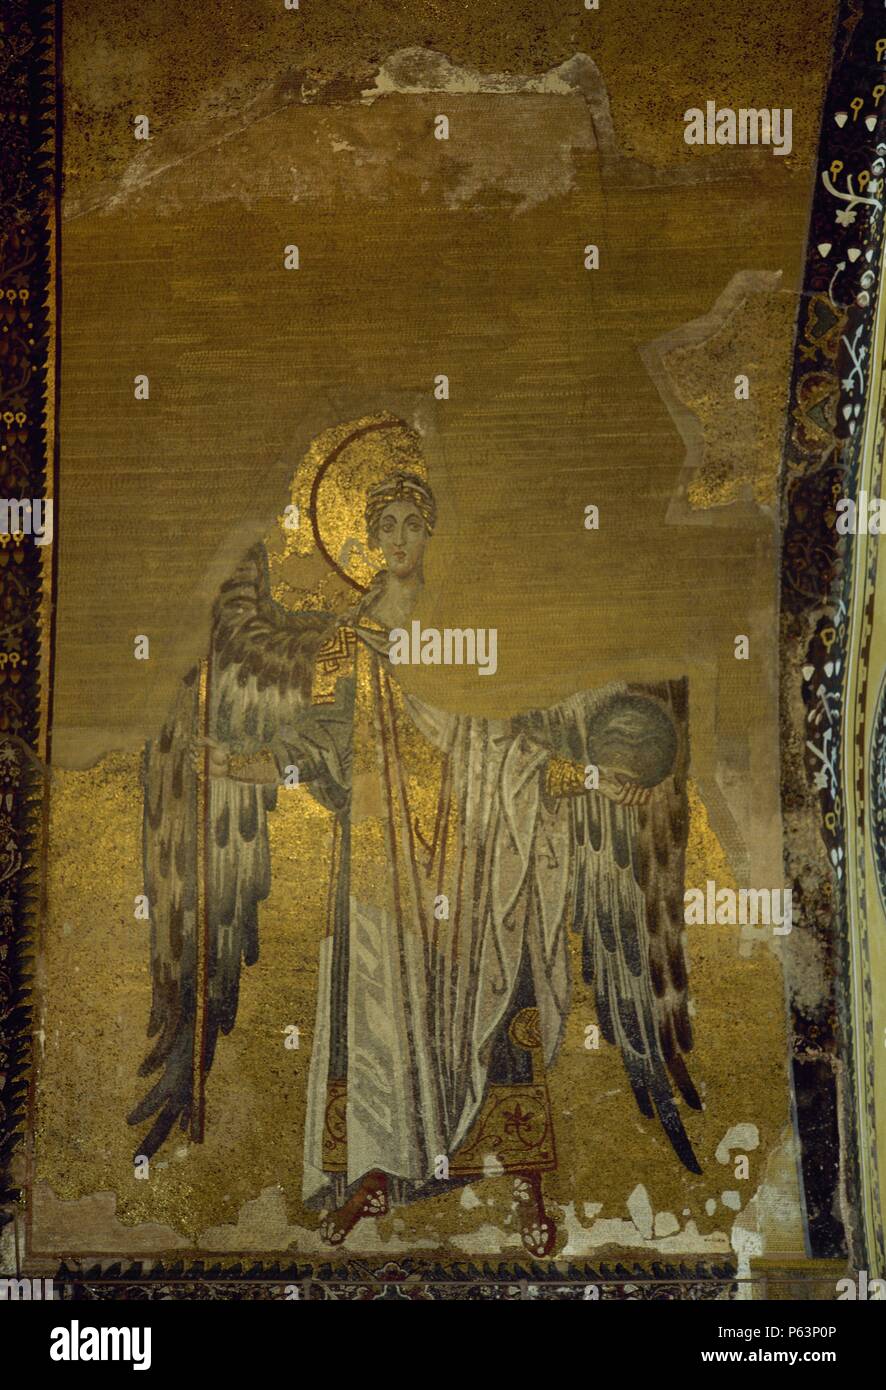 ARTE BIZANTINO. TURQUIA (siglo IX). Mosaico con la representación del ARCANGEL SAN GABRIEL. Localizado en el arco de la nave de la BASILICA DE SANTA SOFIA. ESTAMBUL. Stock Photo